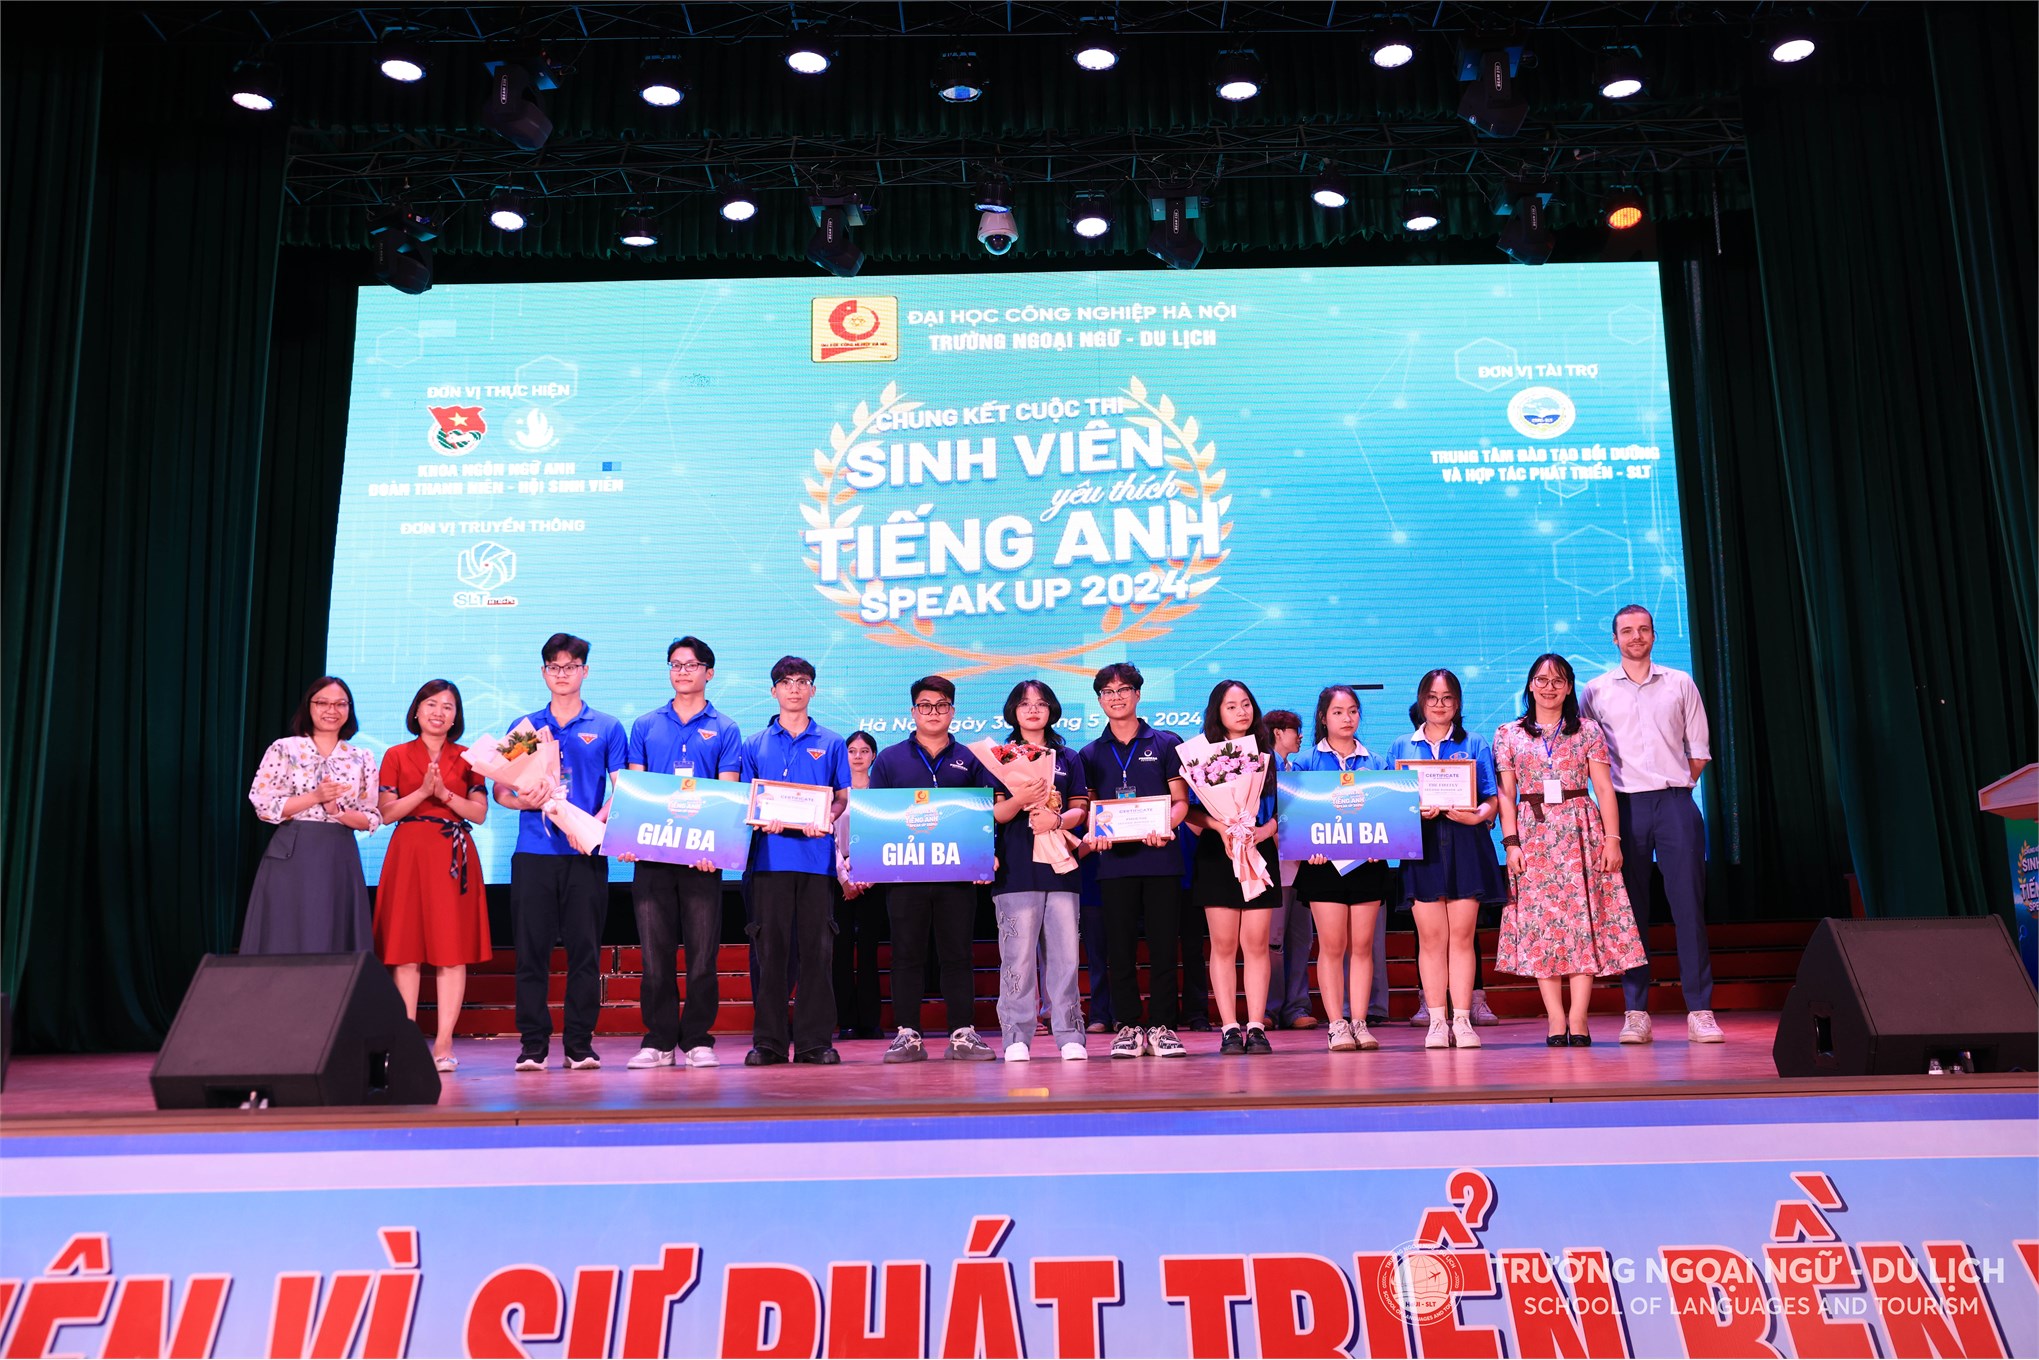 Đội thi Trường Ngoại ngữ - Du lịch giành giải Nhì cuộc thi Sinh viên yêu thích tiếng Anh “Speak Up” năm 2024